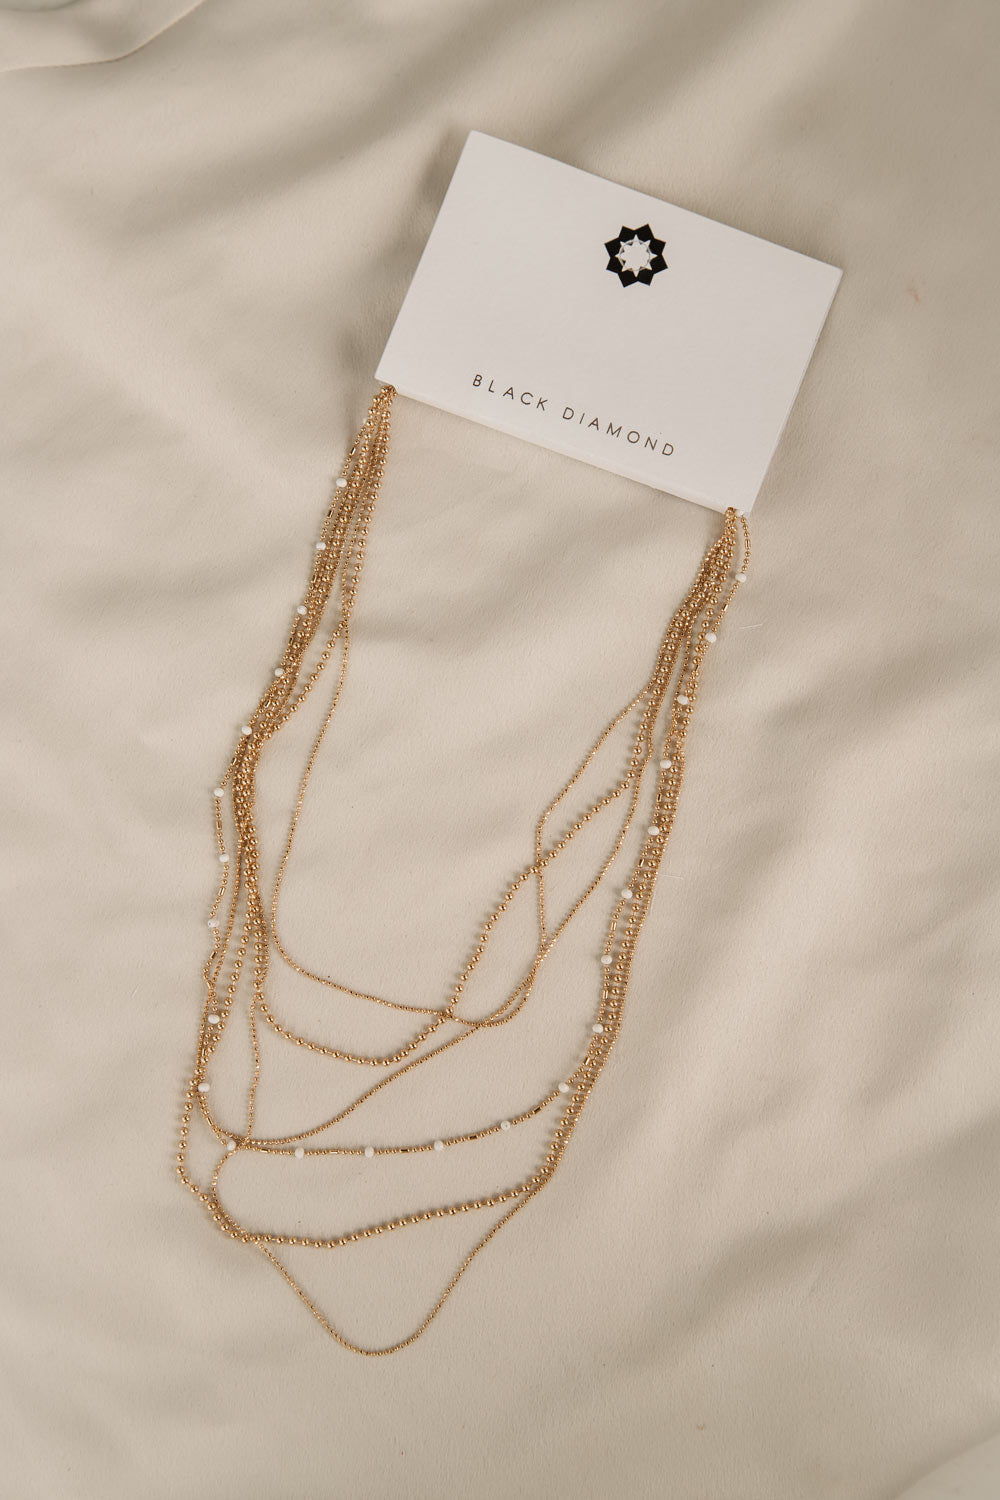 Black Diamond Jewlery - Women's Multi Strand Fine Chain Necklace in Gold